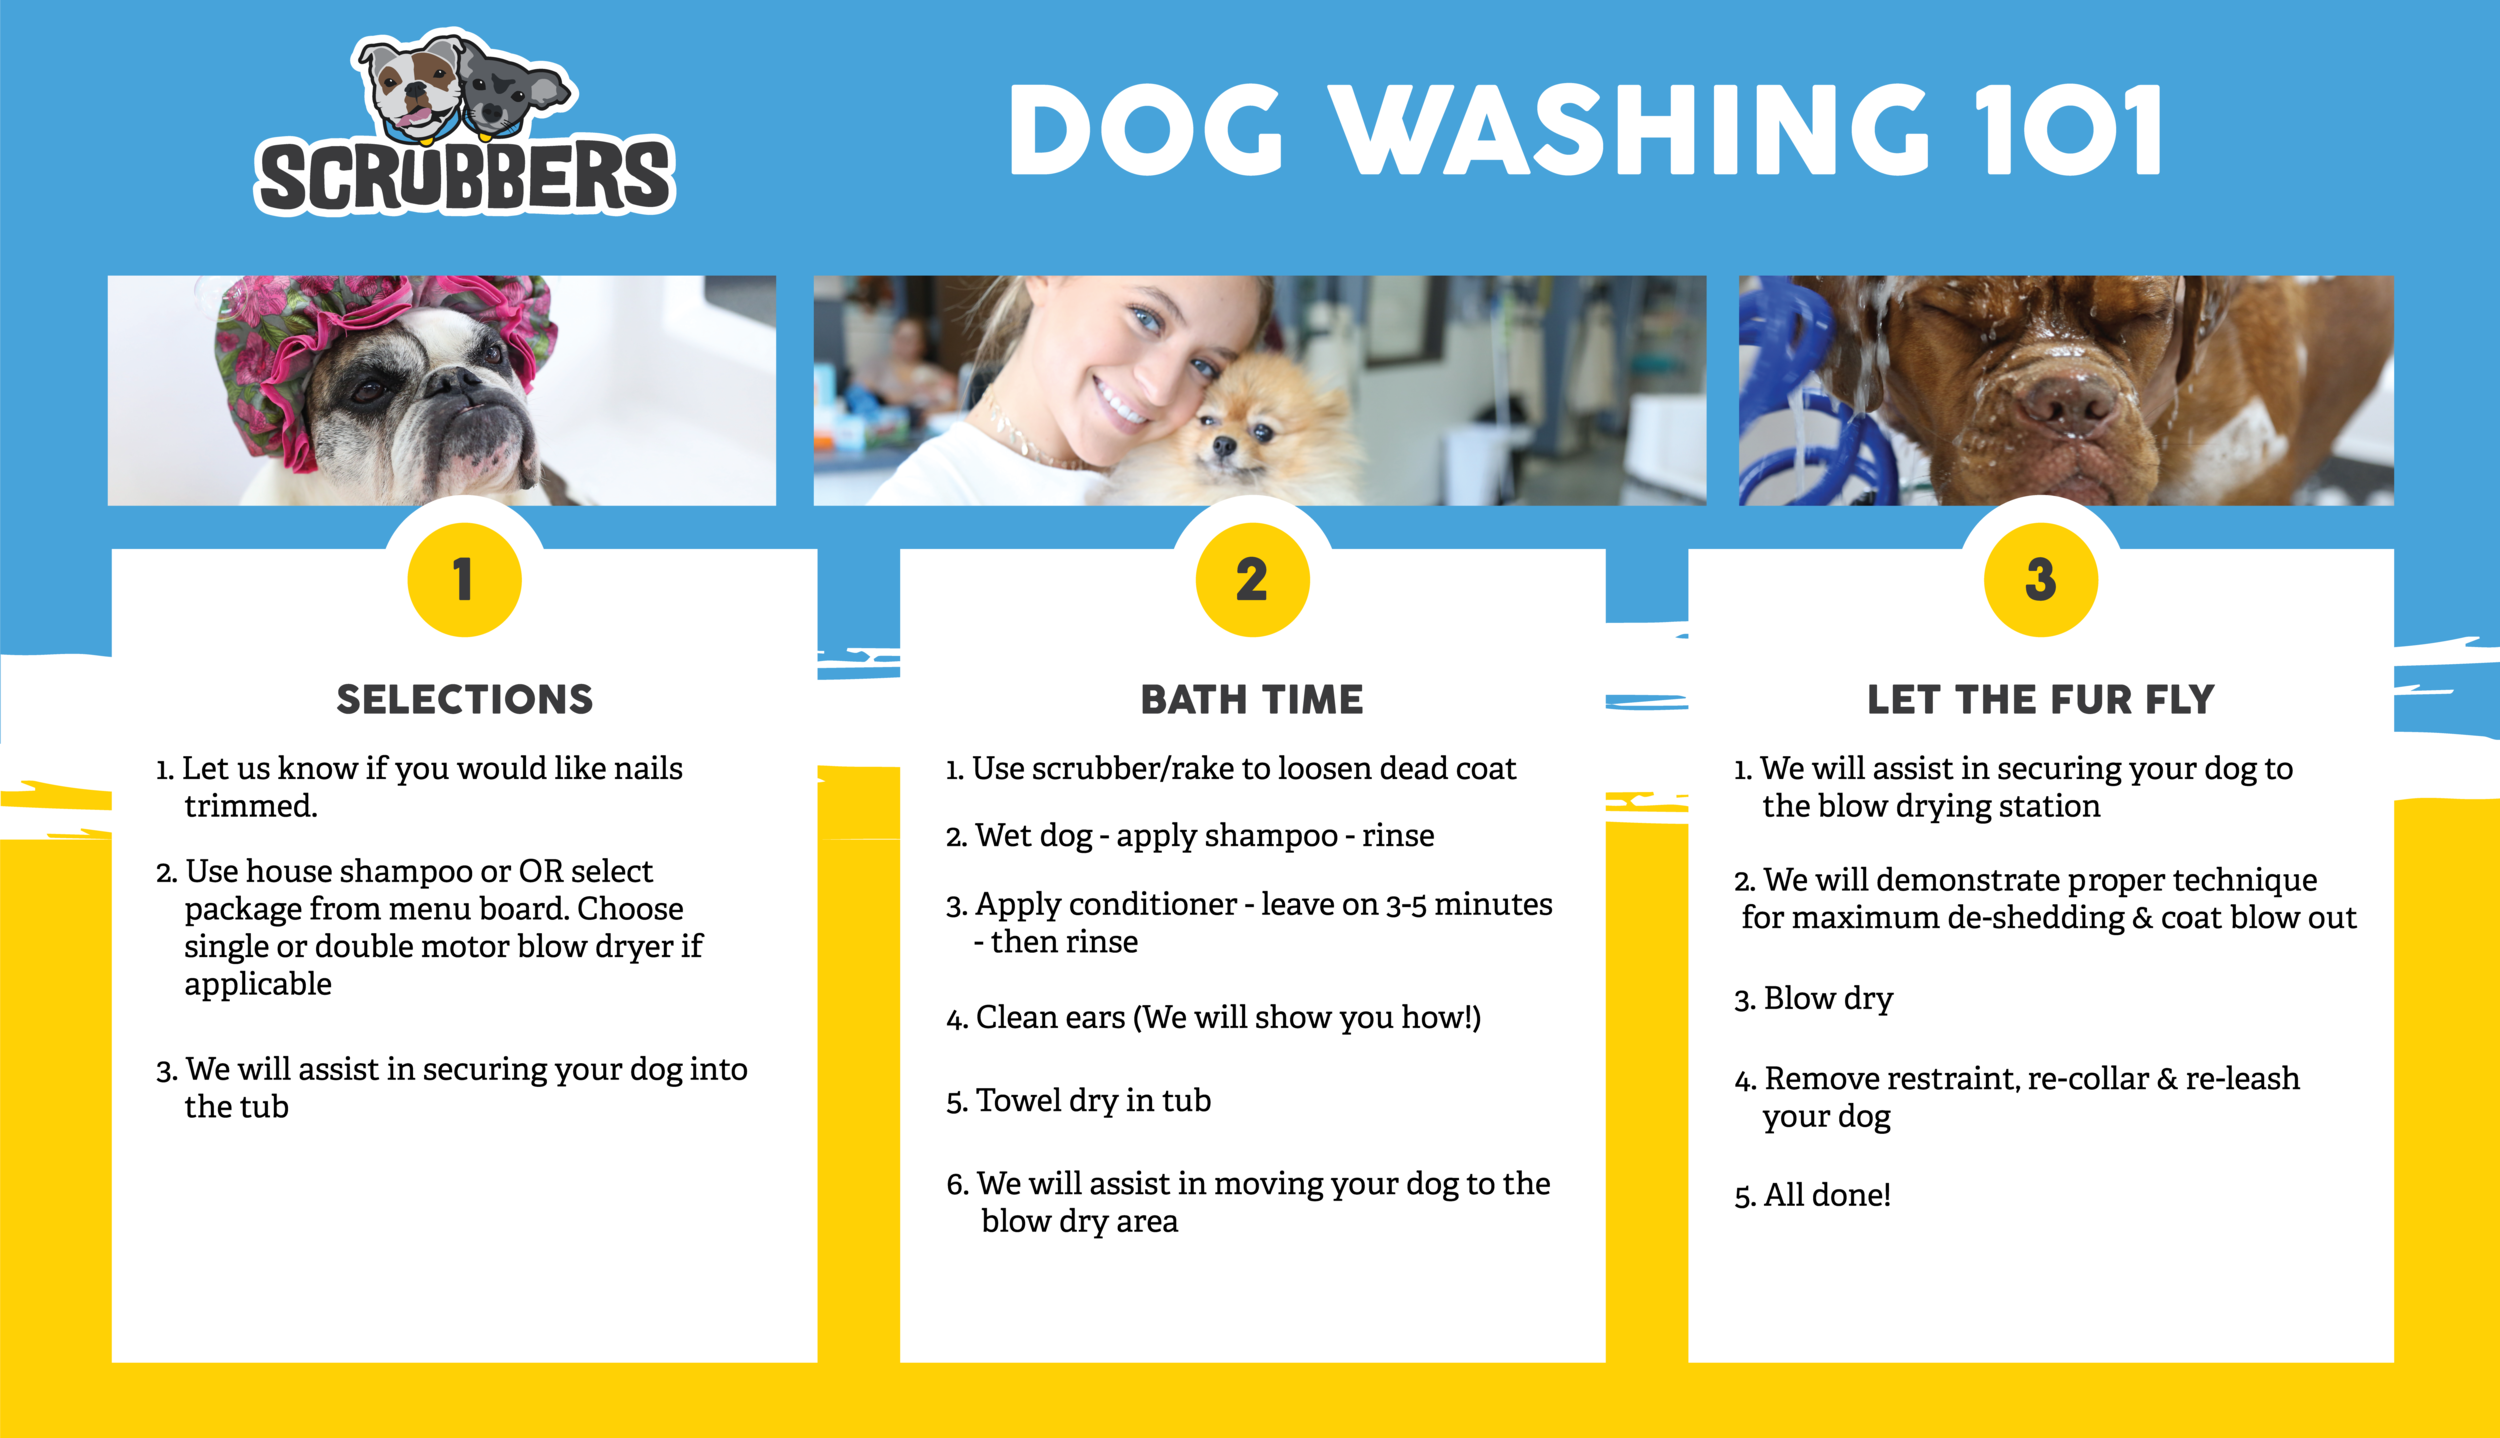 Jack wash the dog. Dog Outdoor Wash Station. Wash the Dog перевод на русский. Bondi Wash.